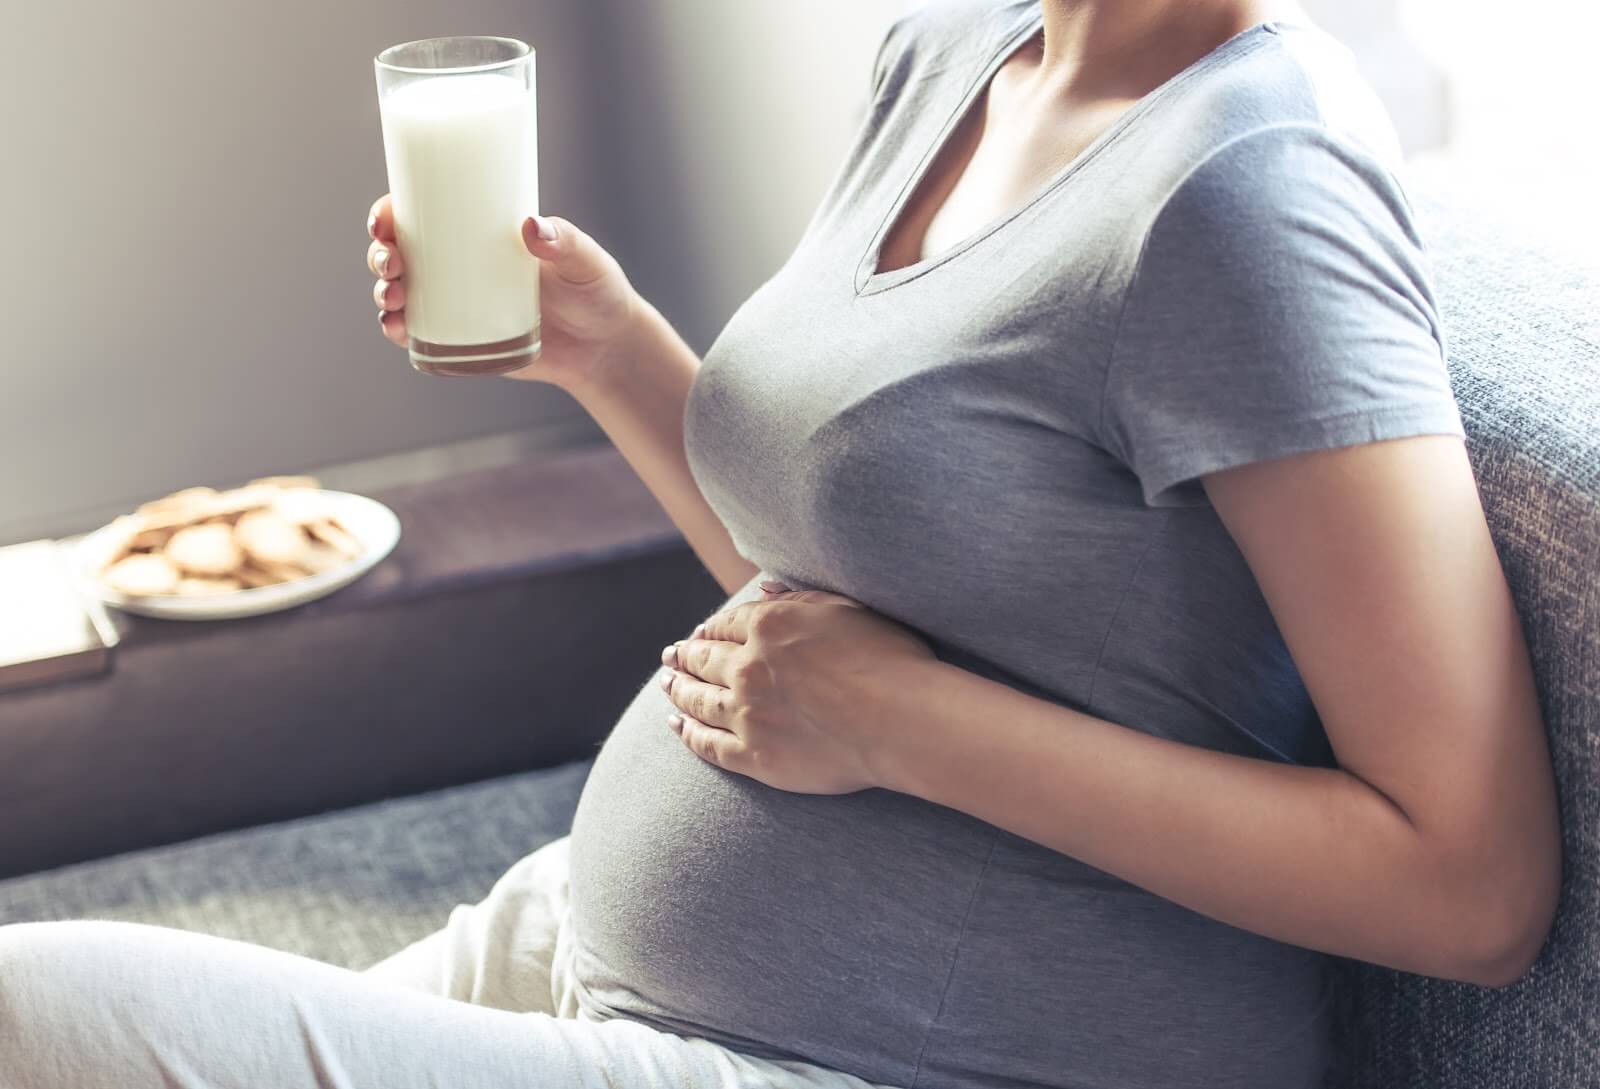  Chọn Sữa Bầu Như Thế Nào Tốt. Lợi Ích Và Cách Sử Dụng Sữa Bầu Khoa Học